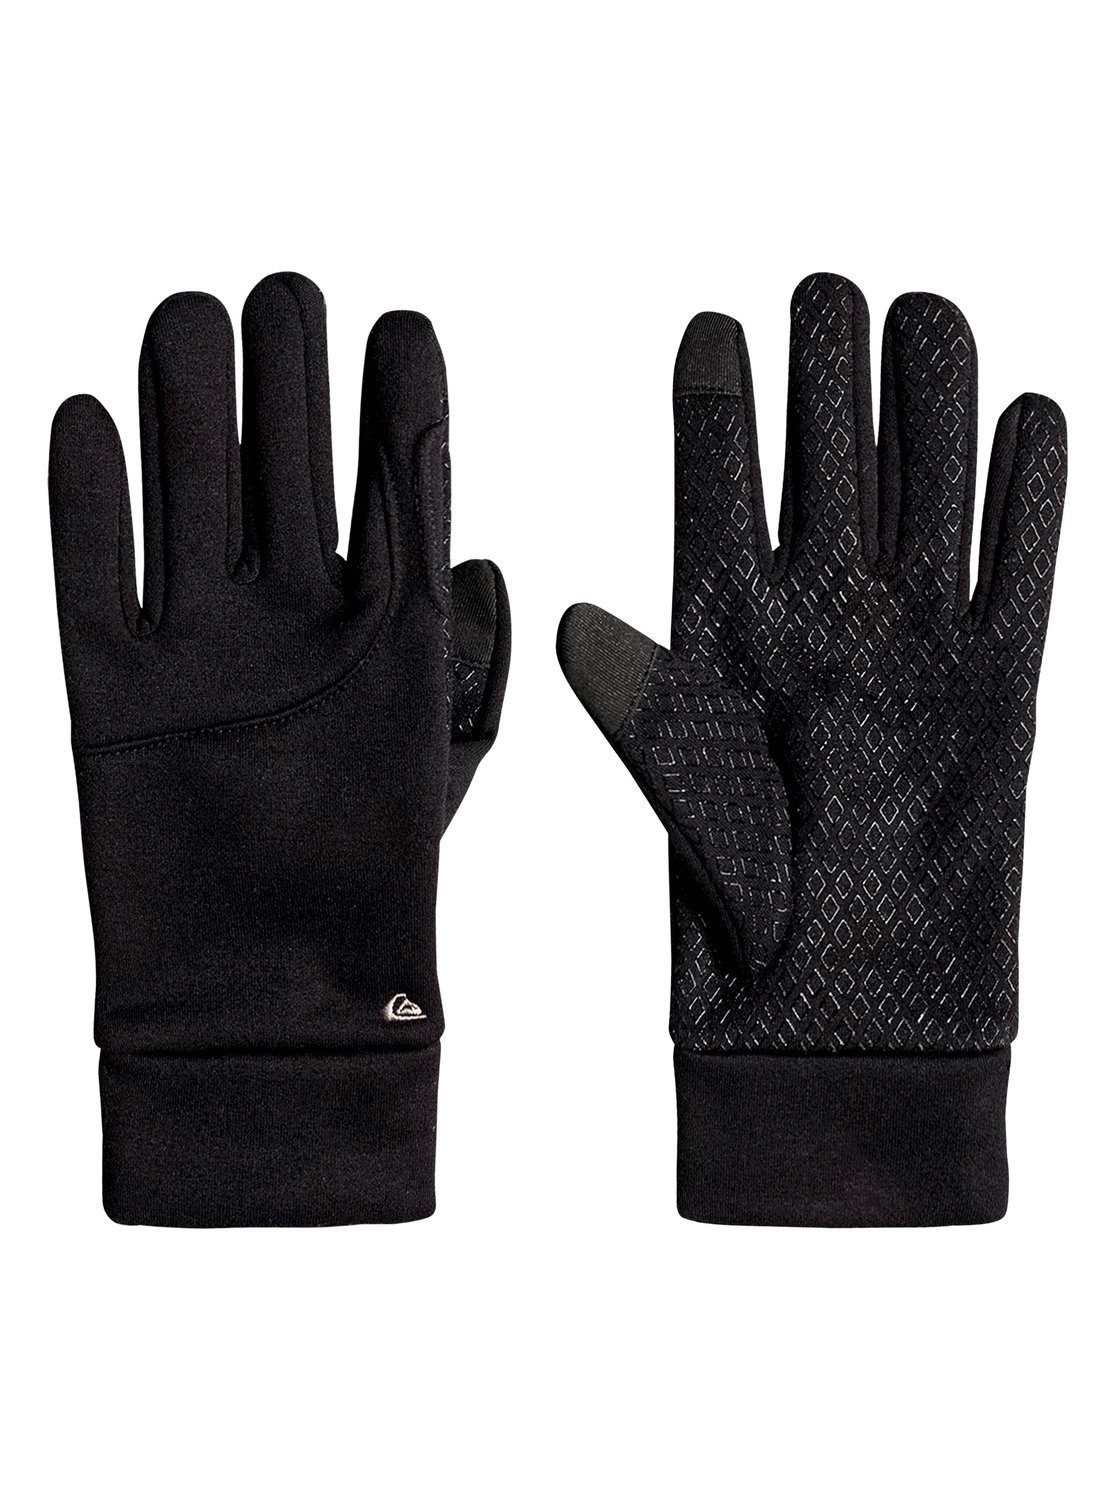 FALKE Erwachsene Handschuhe Gloves Light